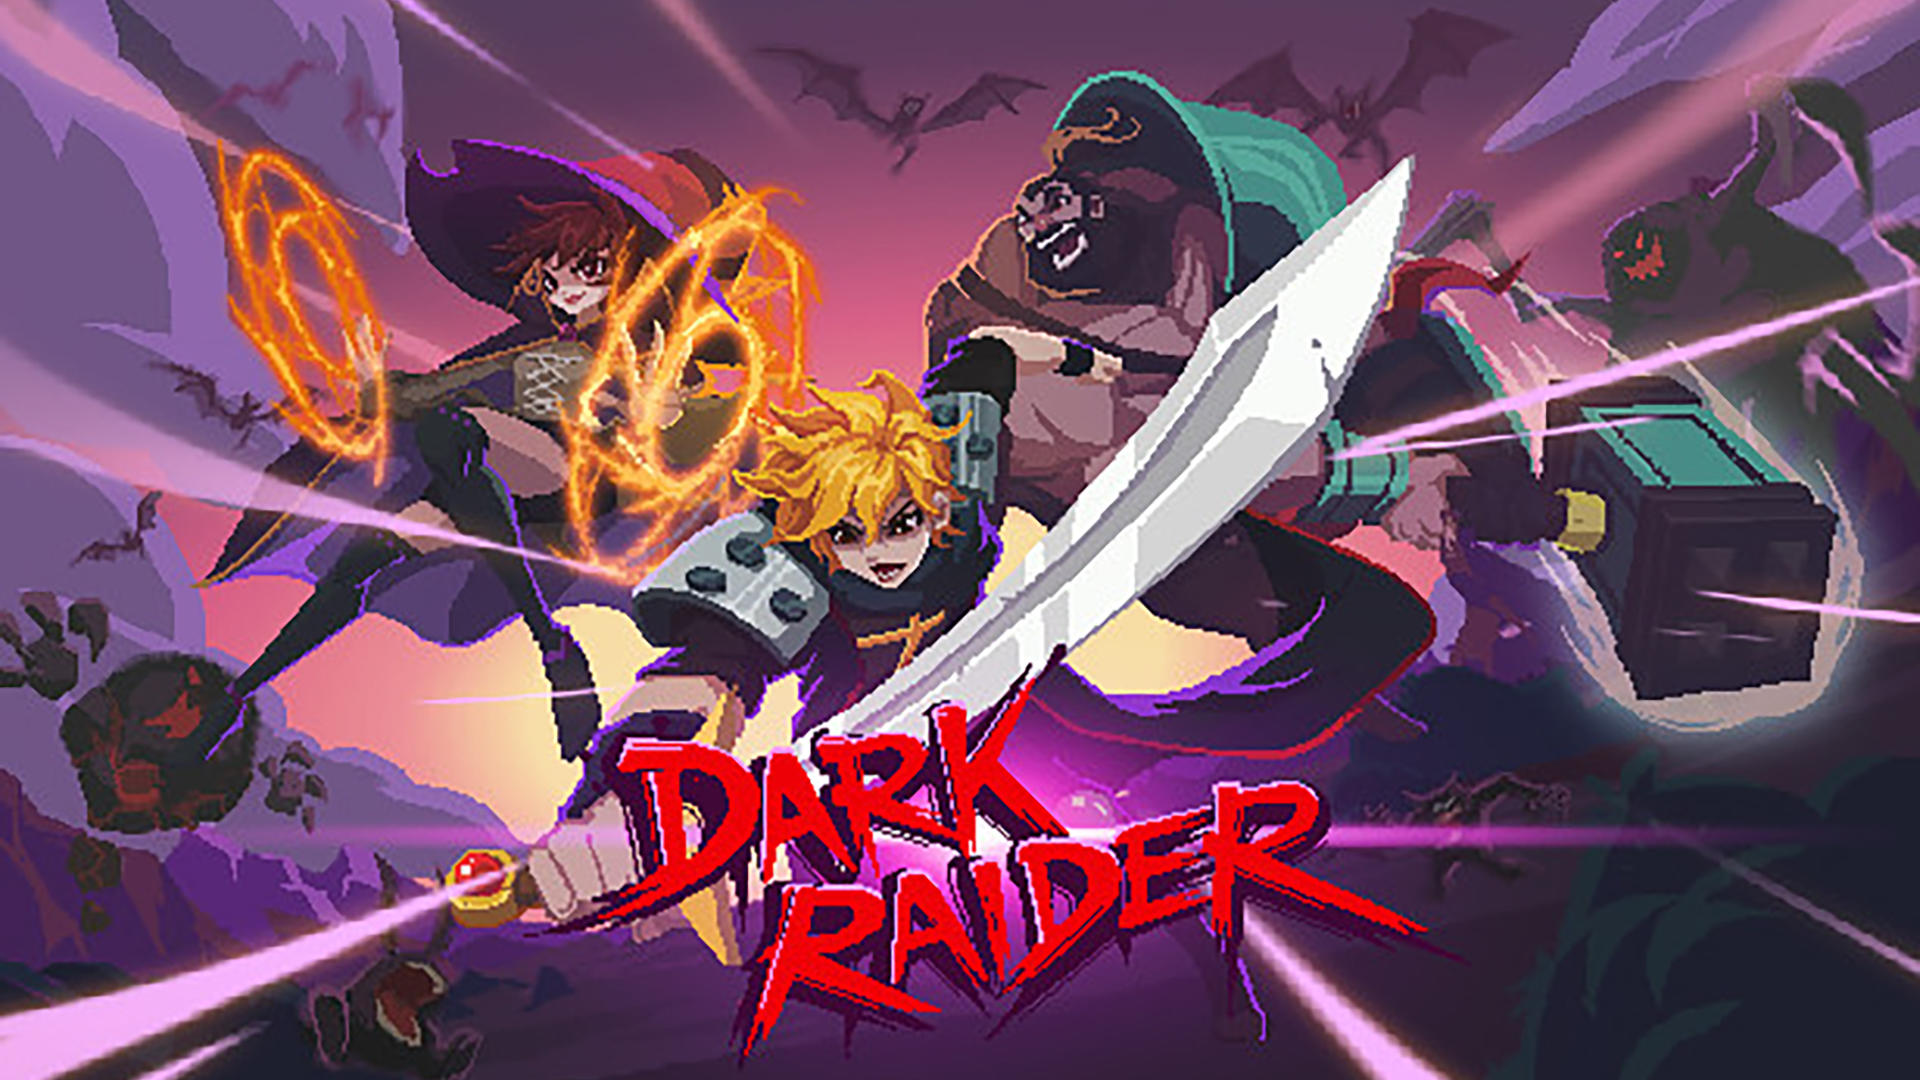 Banner of Темный рейдер 1.0